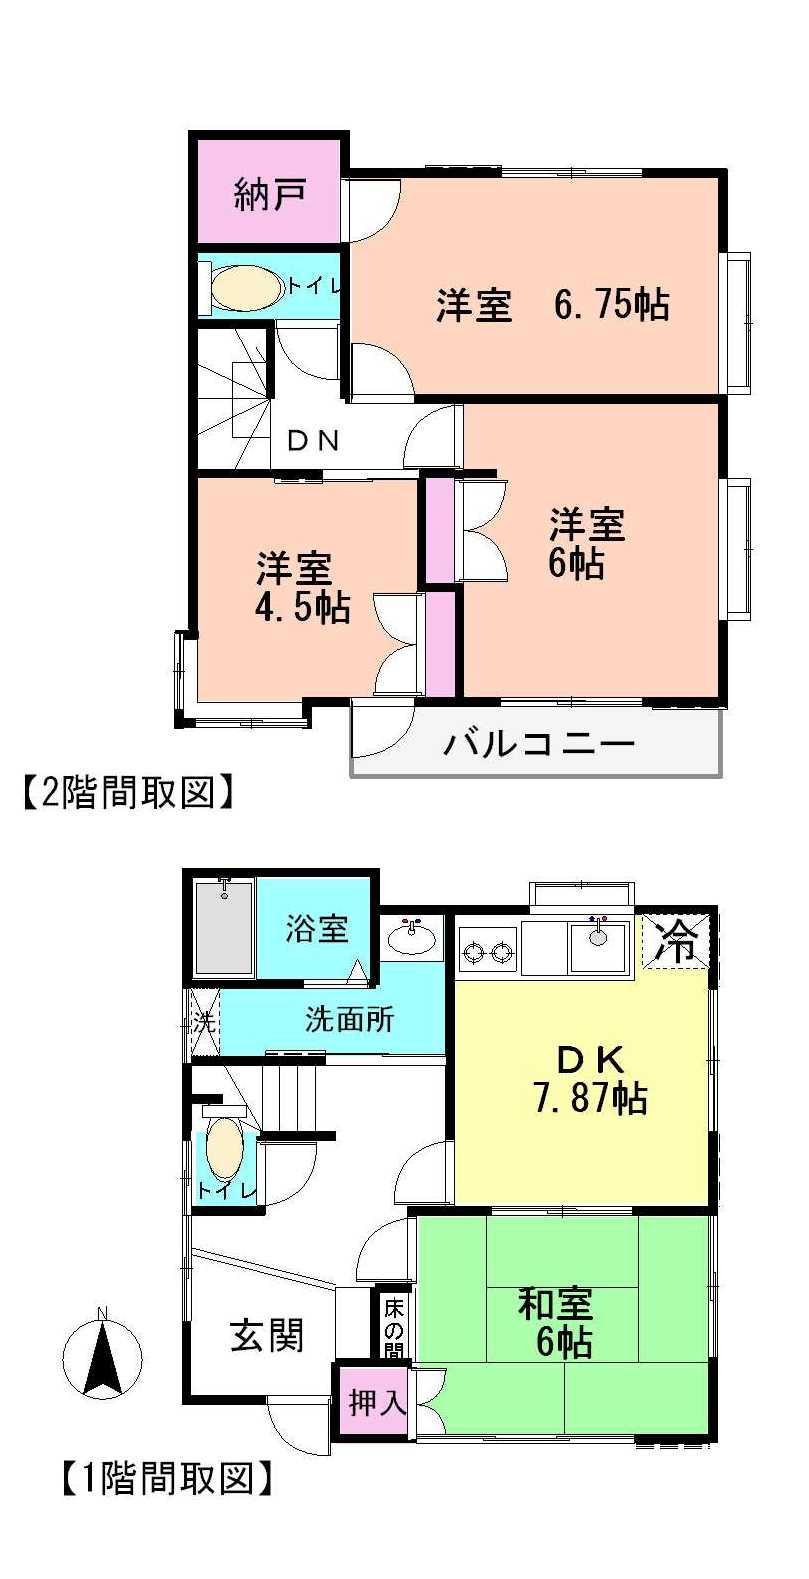 Floor plan. 39,800,000 yen, 4DK, Land area 119.17 sq m , Building area 76.2 sq m